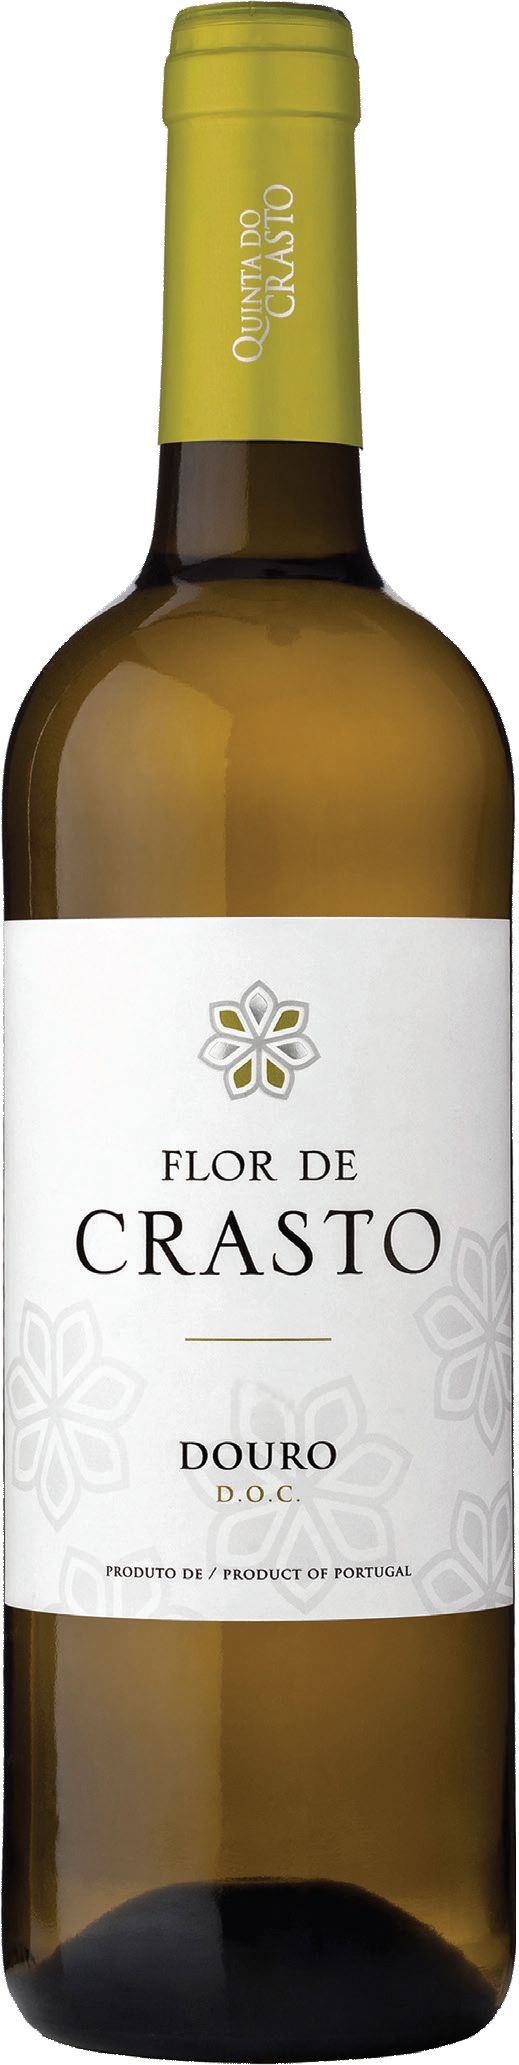 Quinta Do Crasto, Flor De Crasto Branco, 2014